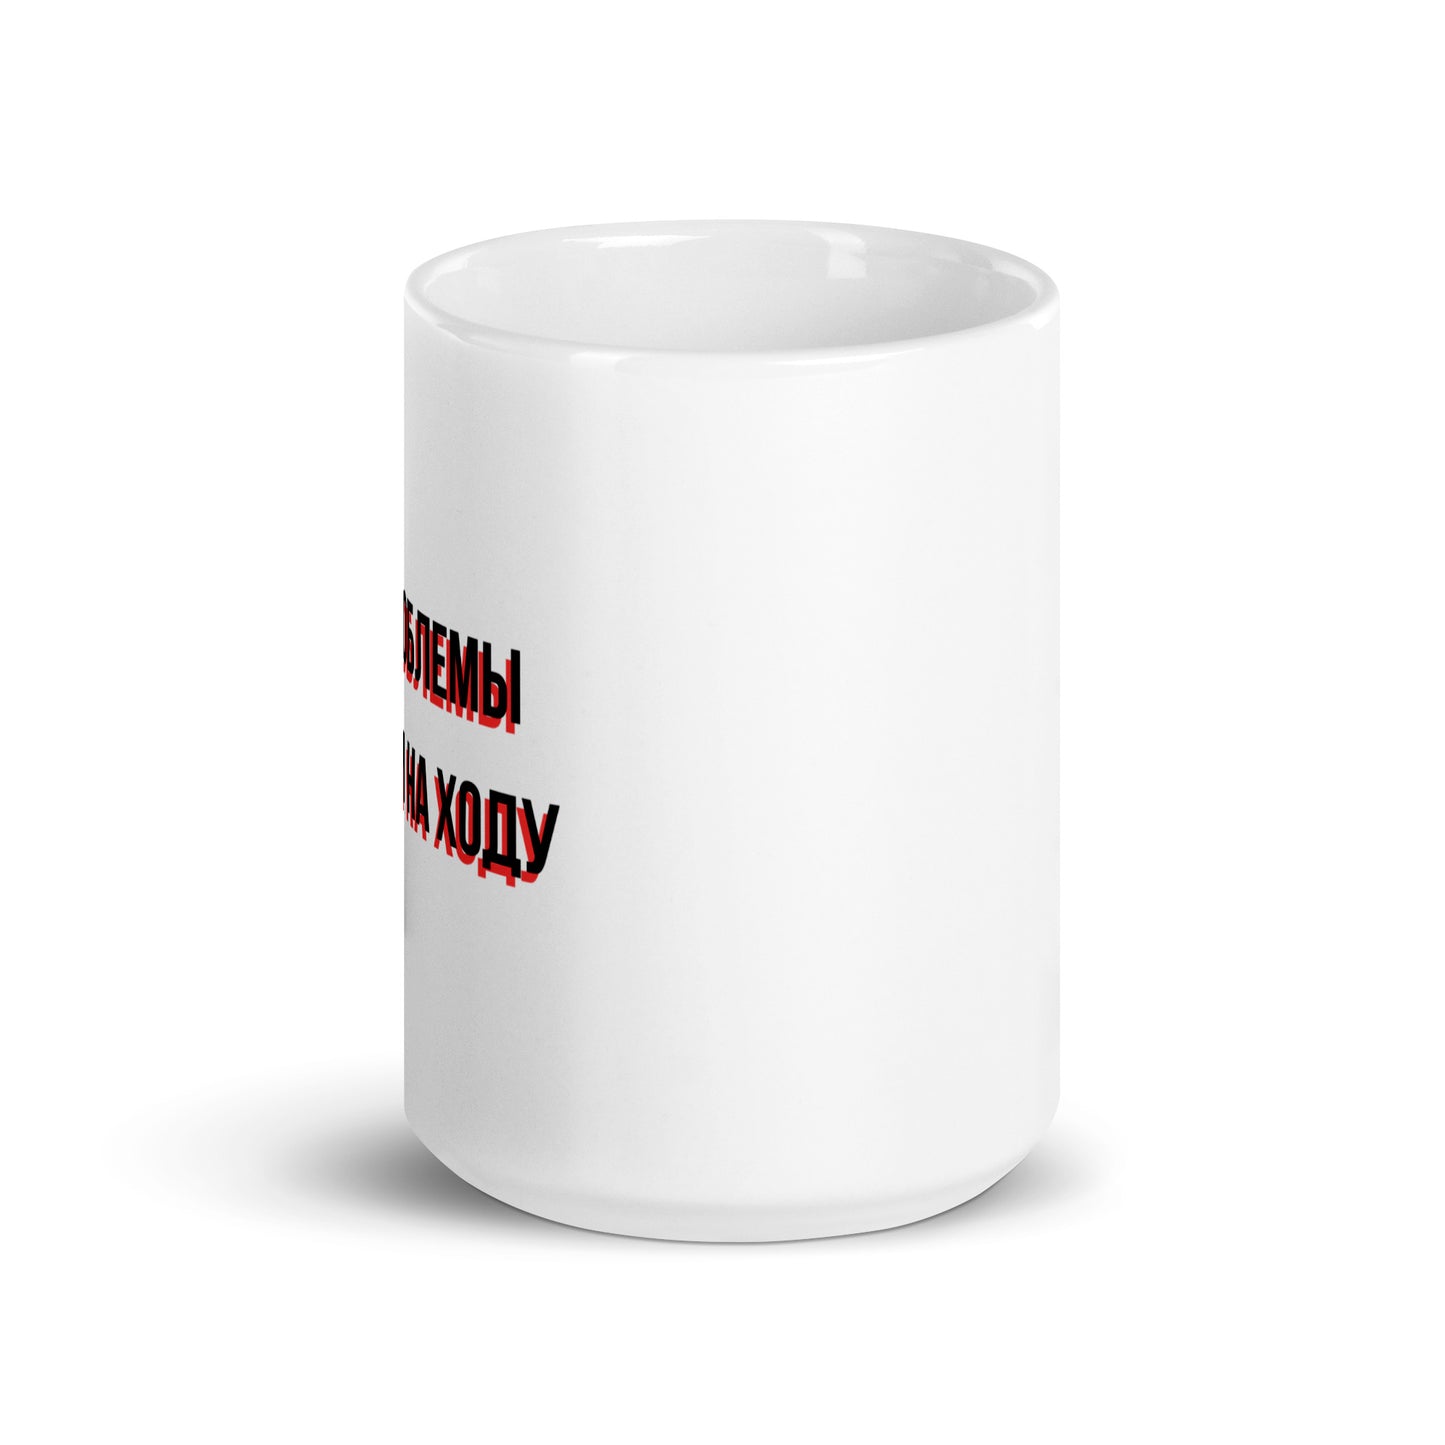 Все проблемы решаем на ходу White glossy mug